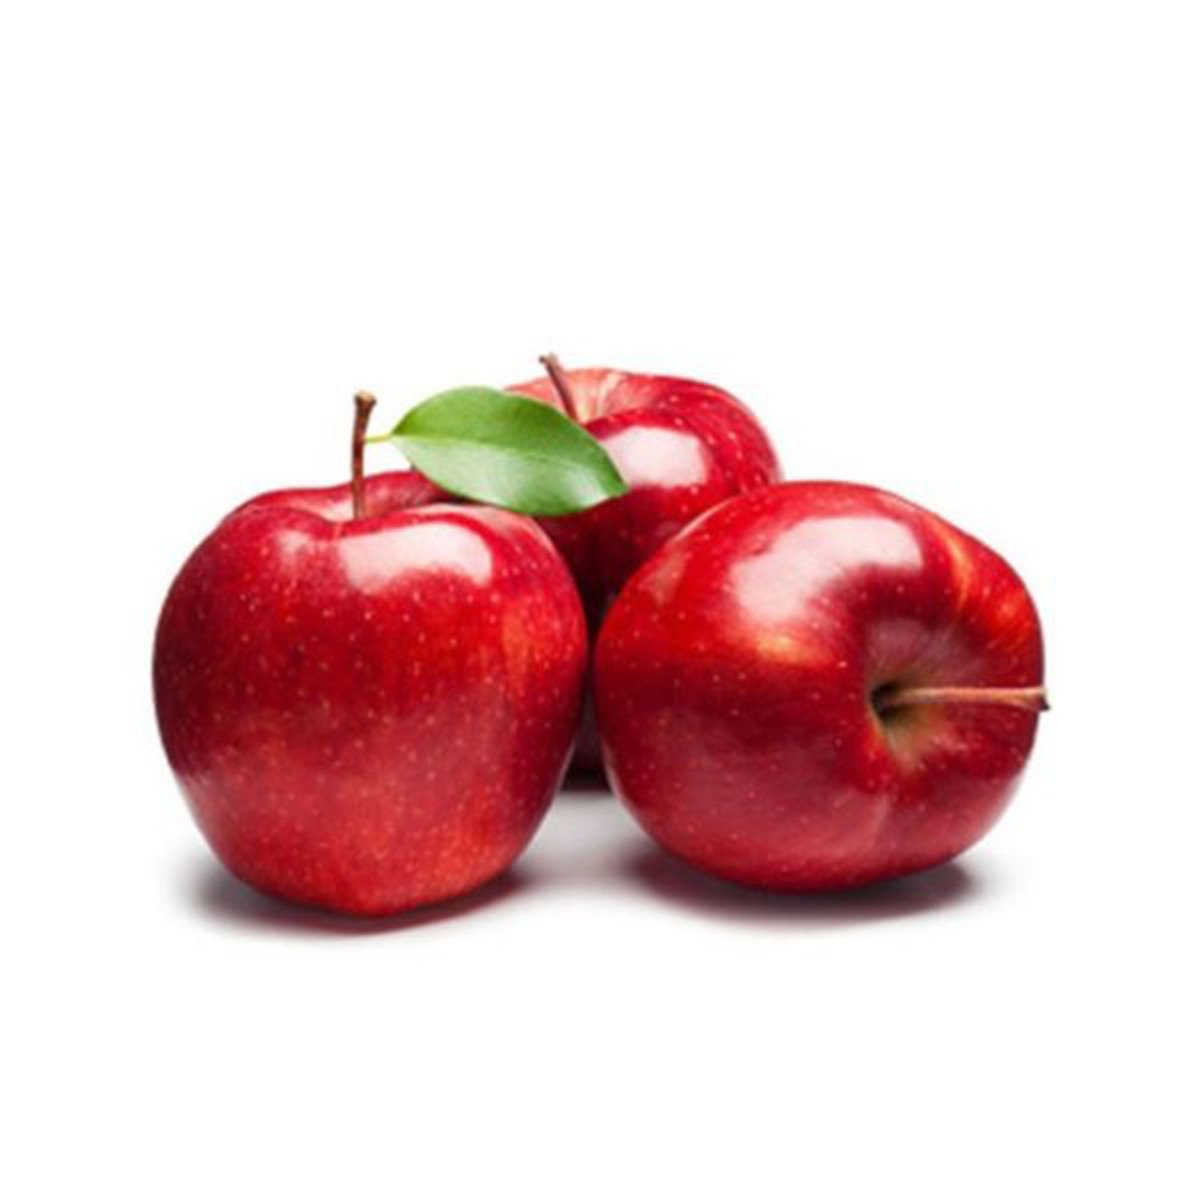 Apple Red 1 kg